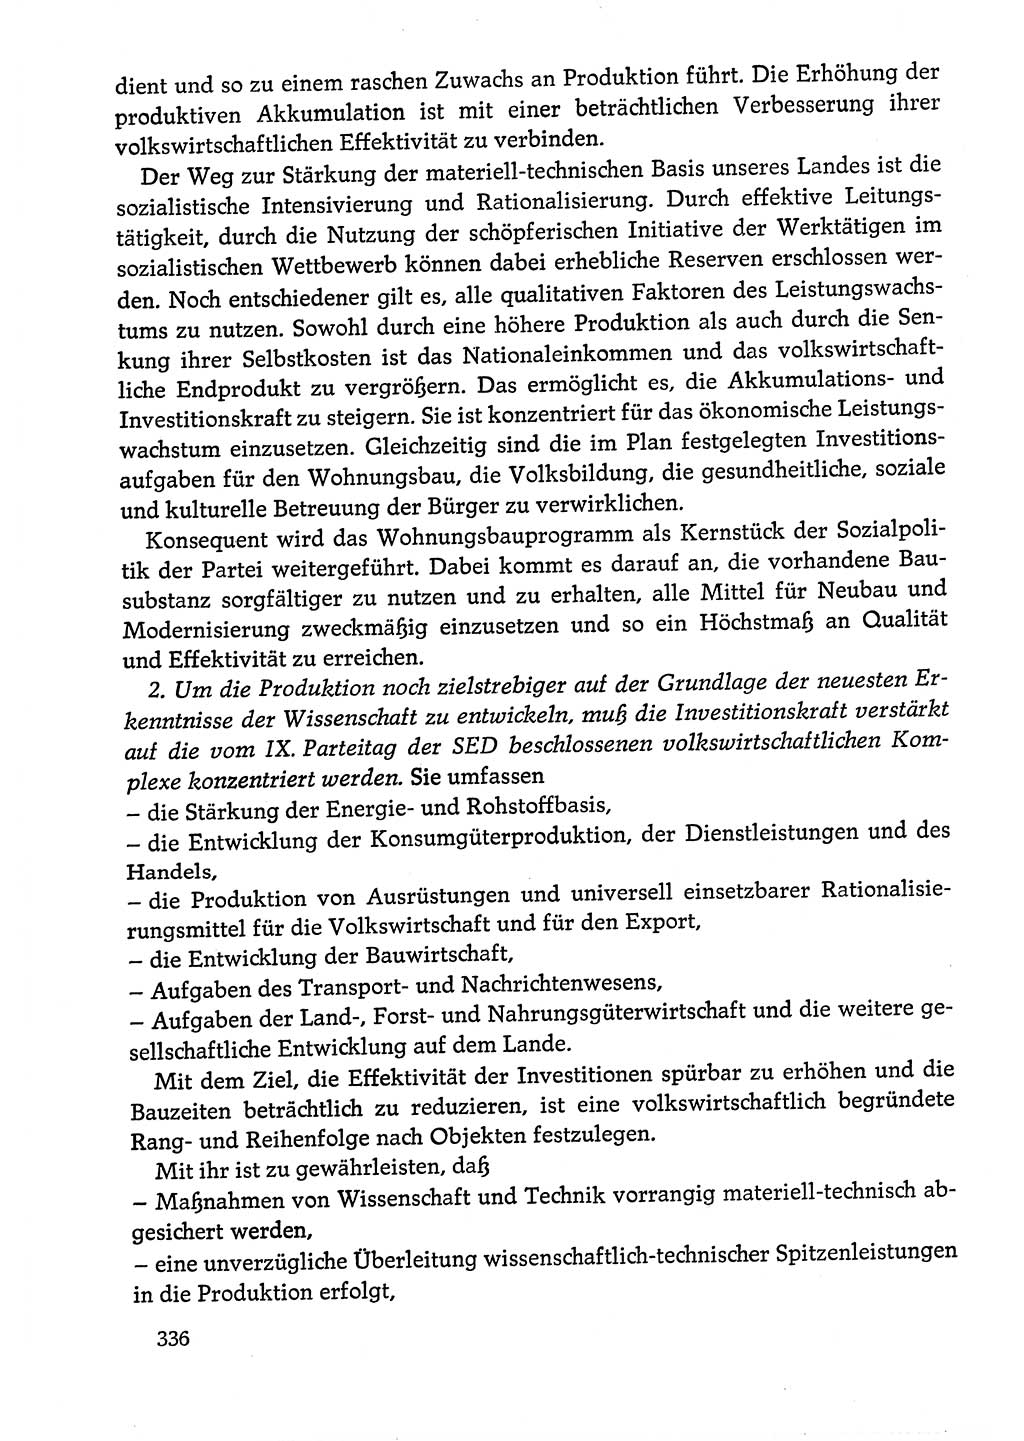 Dokumente der Sozialistischen Einheitspartei Deutschlands (SED) [Deutsche Demokratische Republik (DDR)] 1978-1979, Seite 336 (Dok. SED DDR 1978-1979, S. 336)